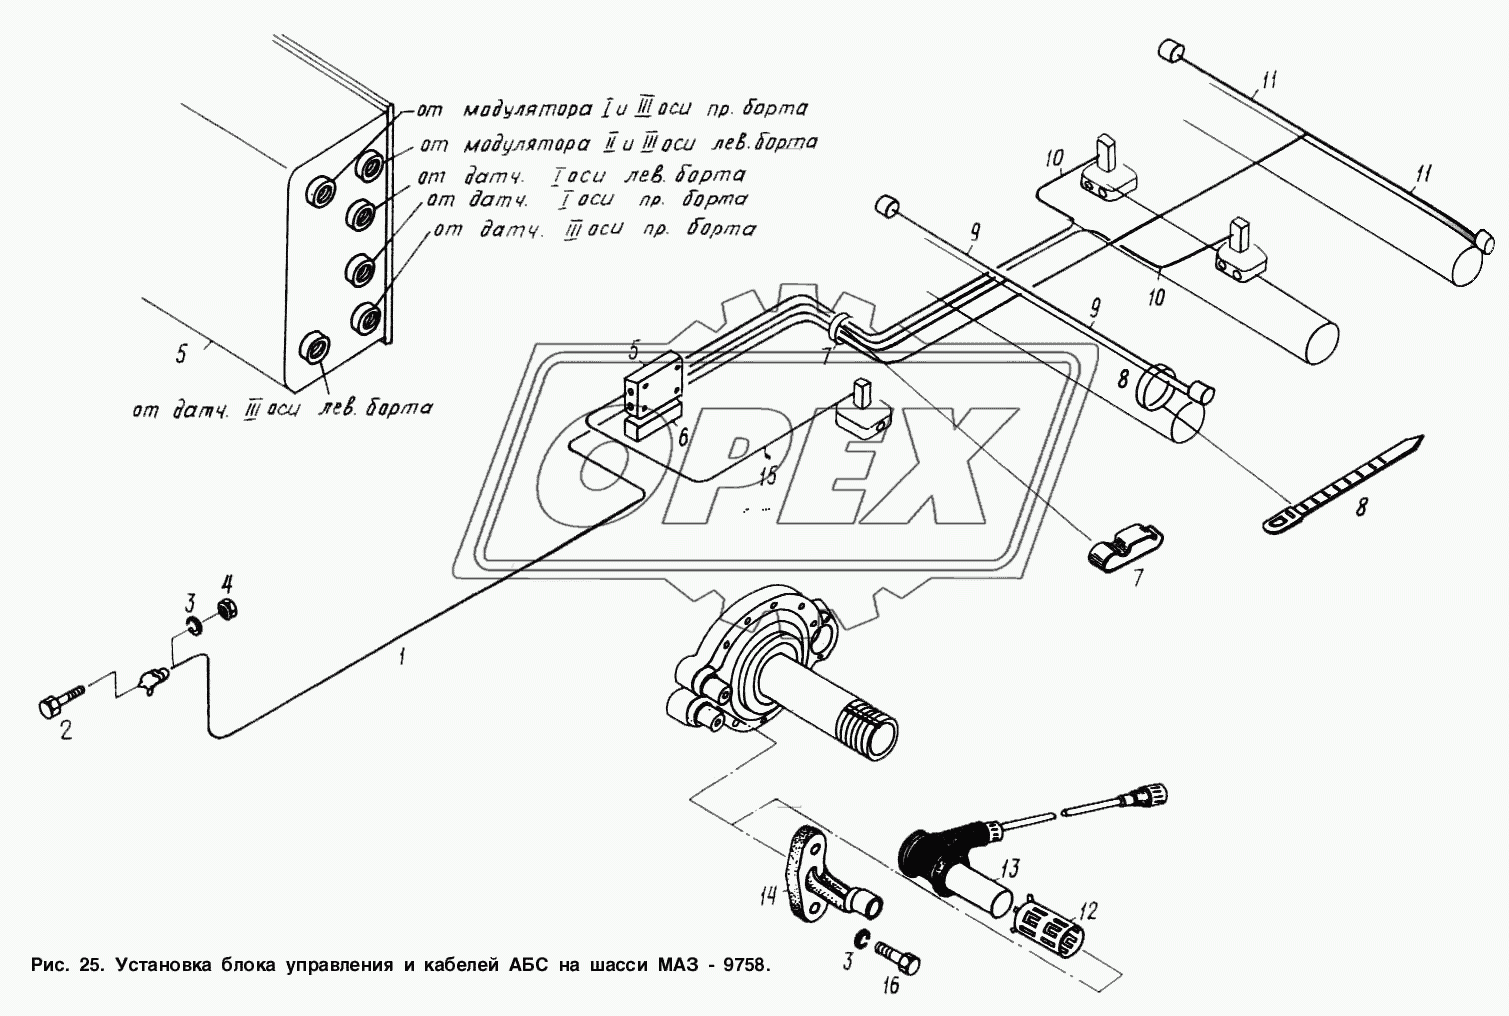 Установка блока управления и кабелей АБС на шасси МАЗ-9758